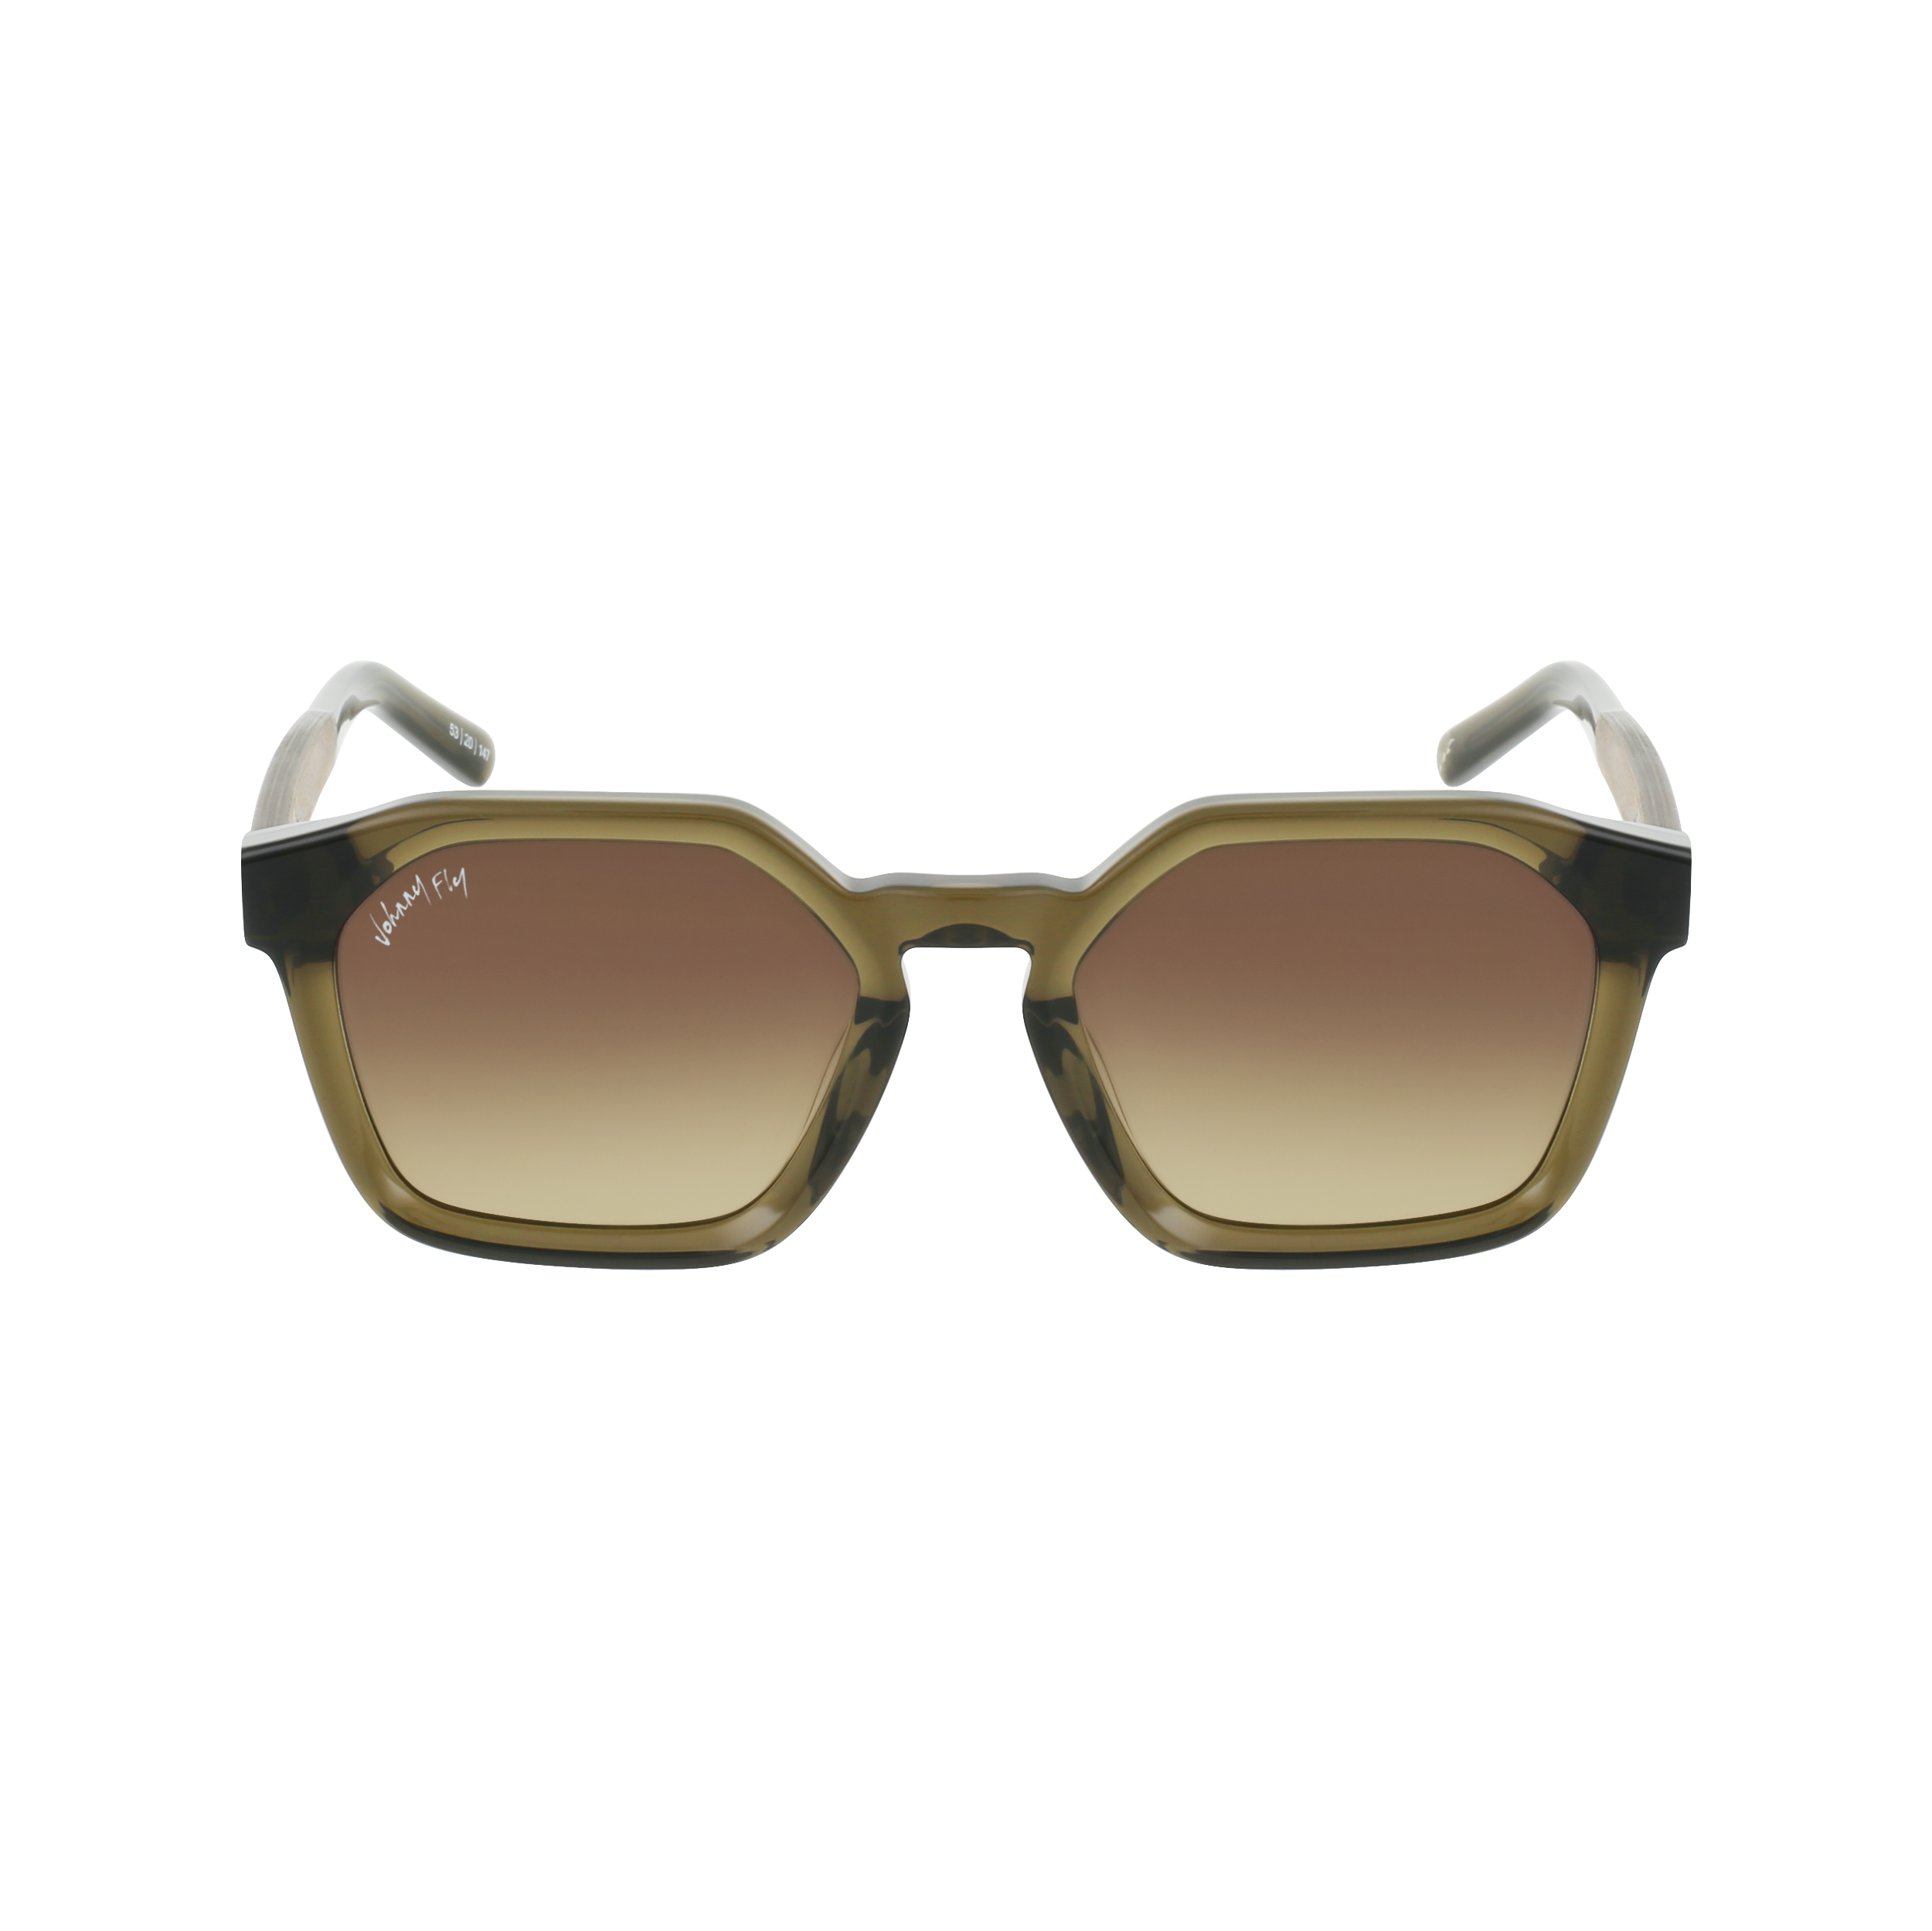 FORTUNE Sunglasses Frame - Olive- Johnny Fly | FOR-OLV-LBGR | | #color_olive